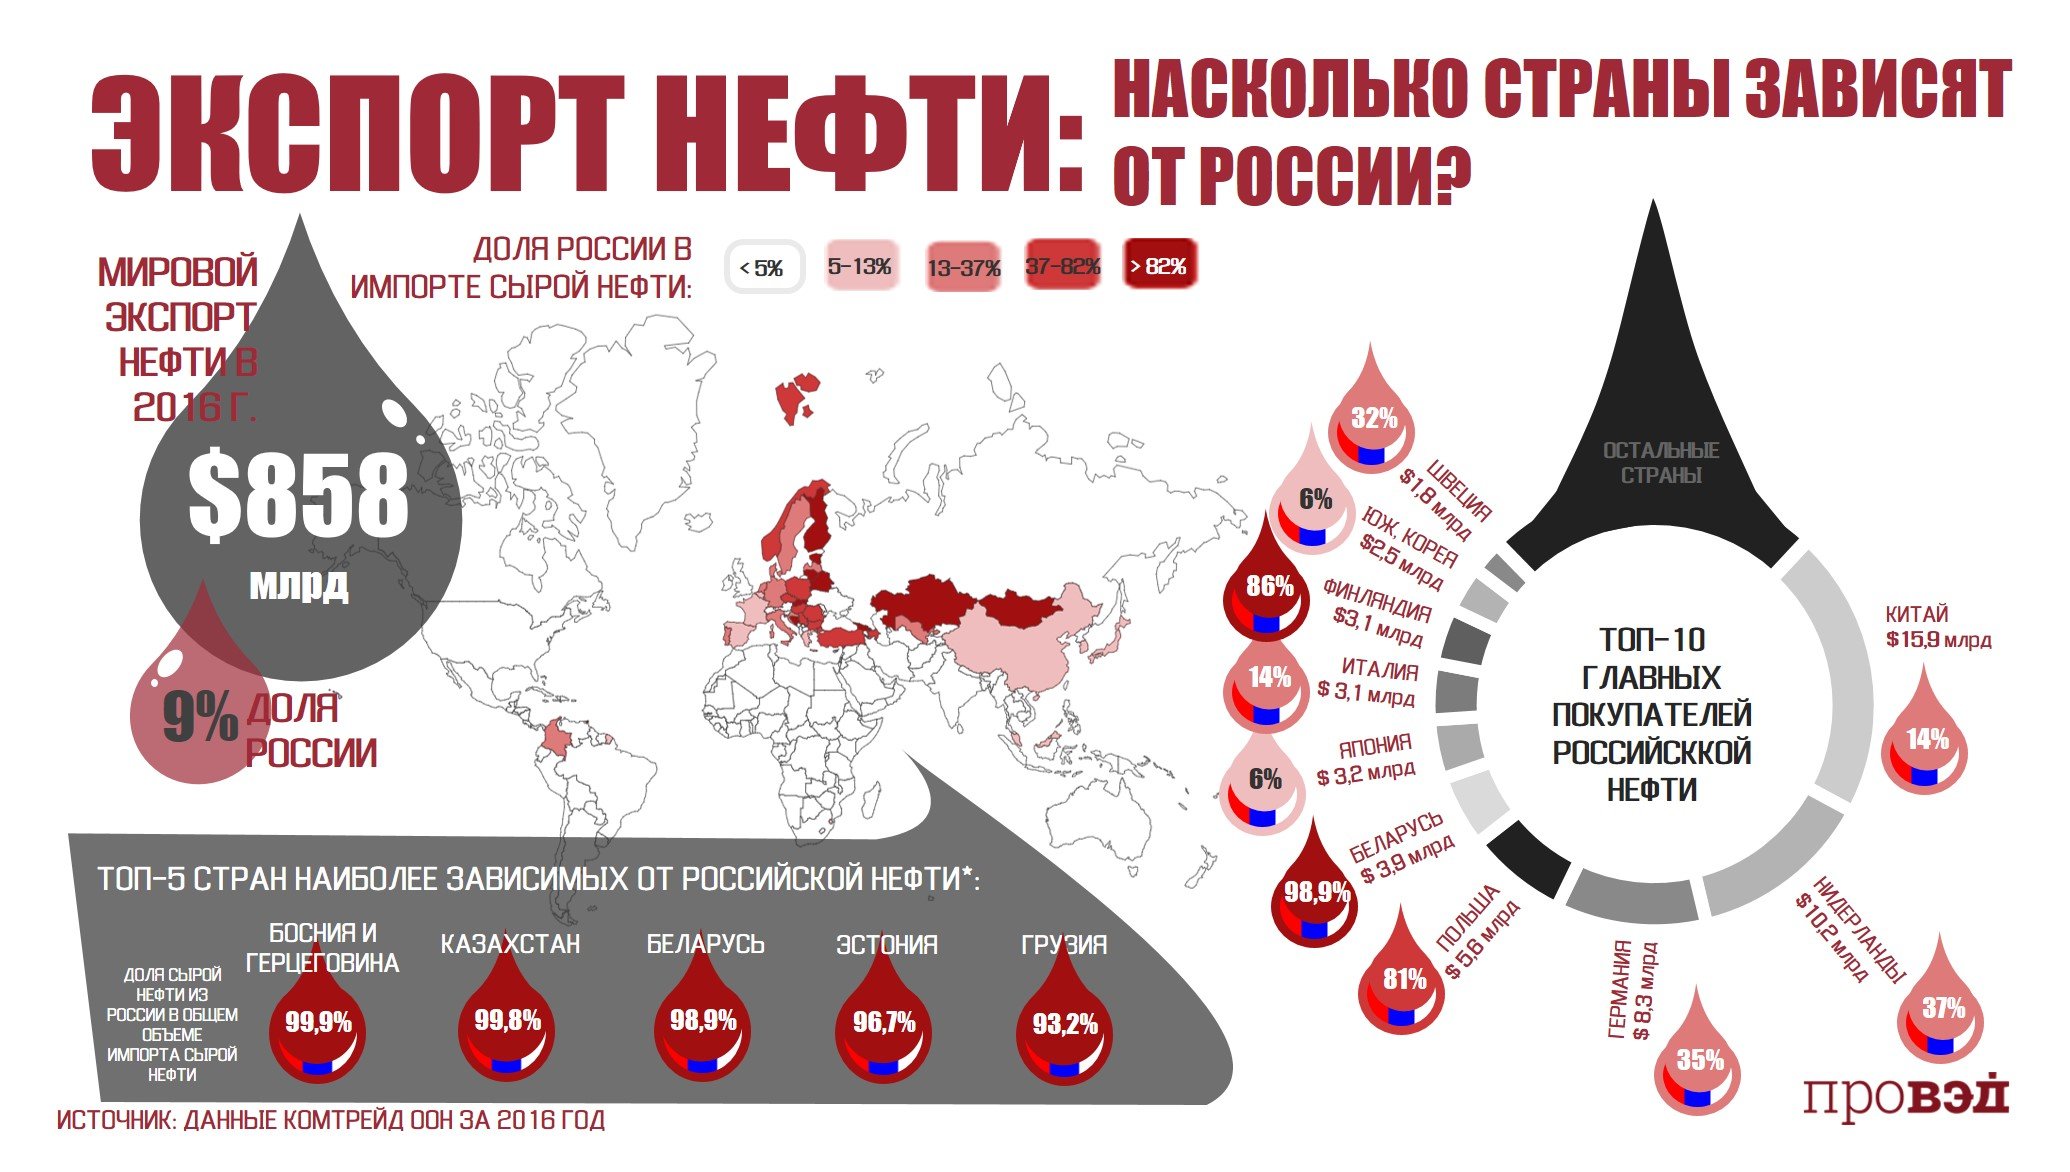 Насколько мир. Зависимость стран от Российской нефти. Куда Россия продает нефть по странам. Покупатели Российской нефти страны. Зависимость стран Европы от Российской нефти.